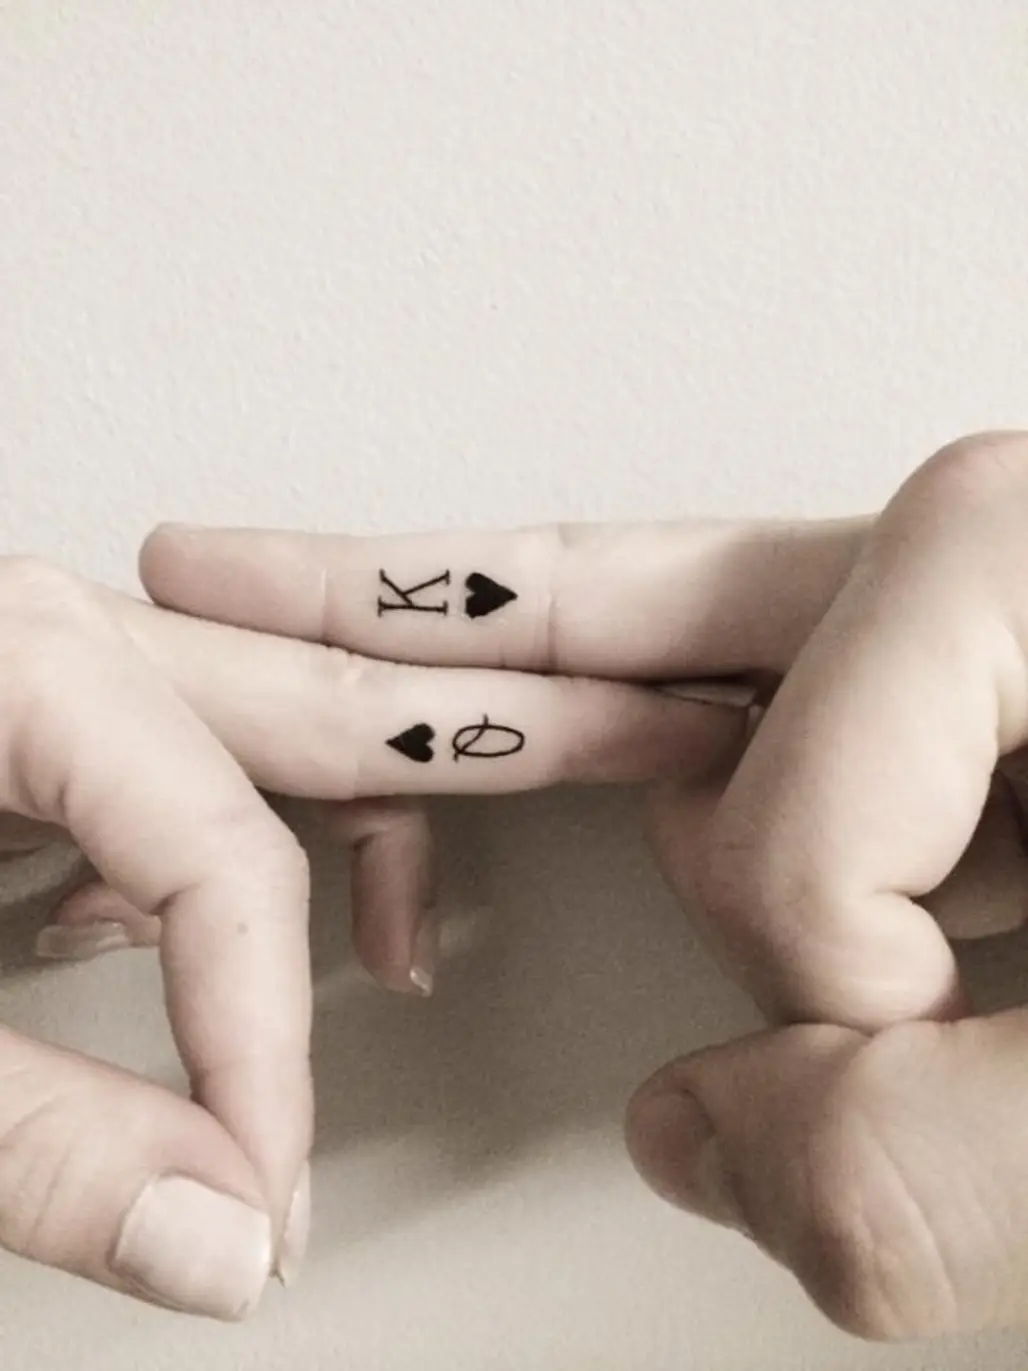 Machine Gun Kelly and Megan Fox debut matching finger tattoos